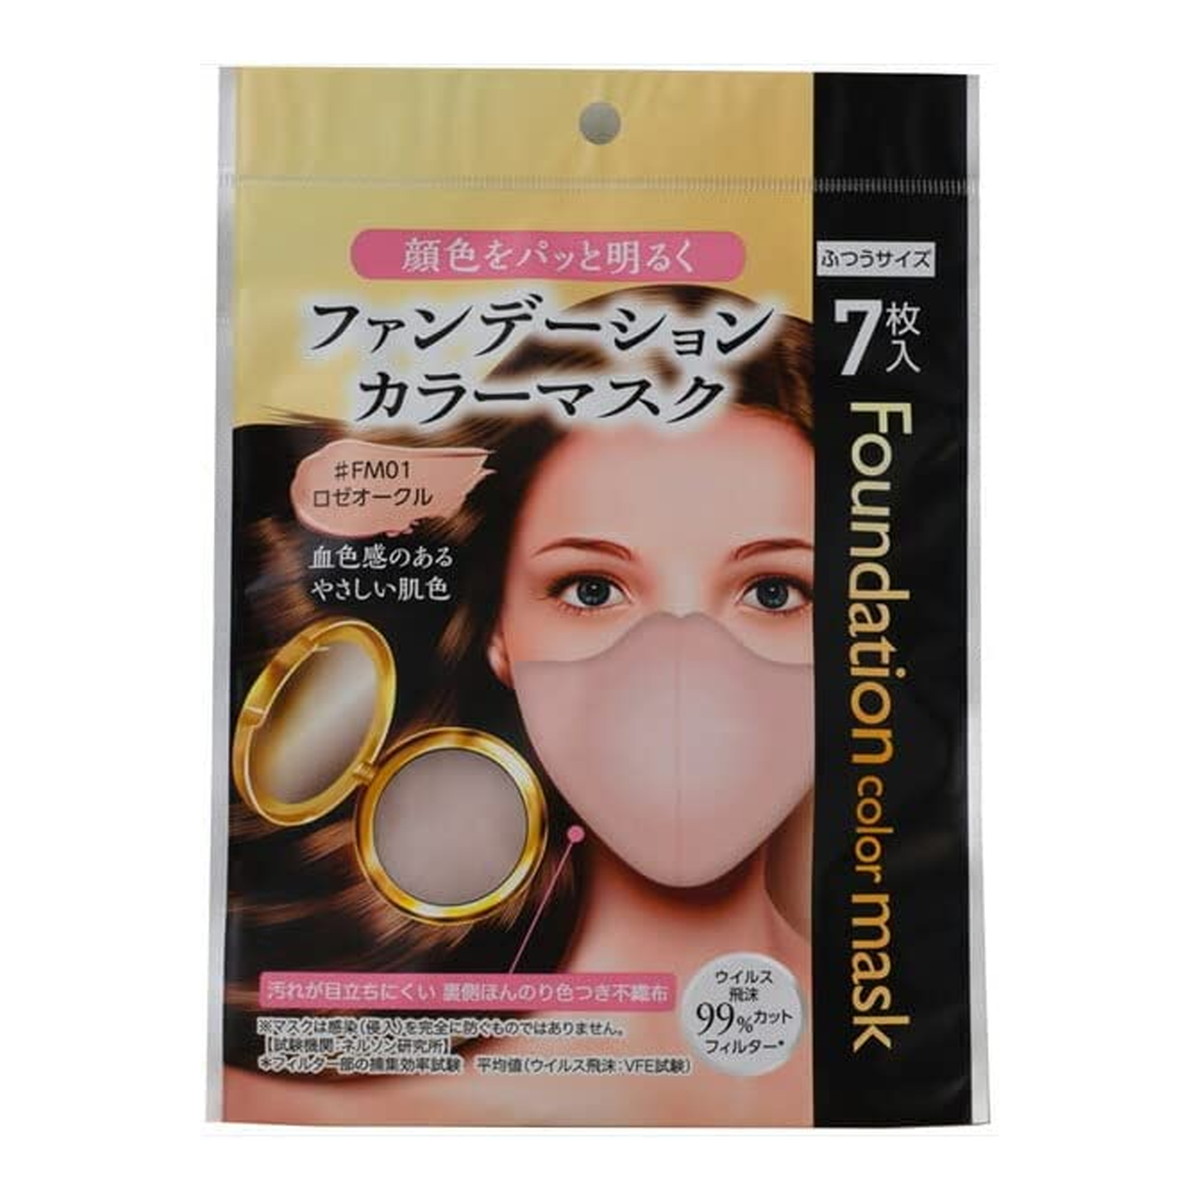 フォワード ファンデーションカラーマスク ロゼオークル 7枚入 × 1個 衛生用品マスクの商品画像